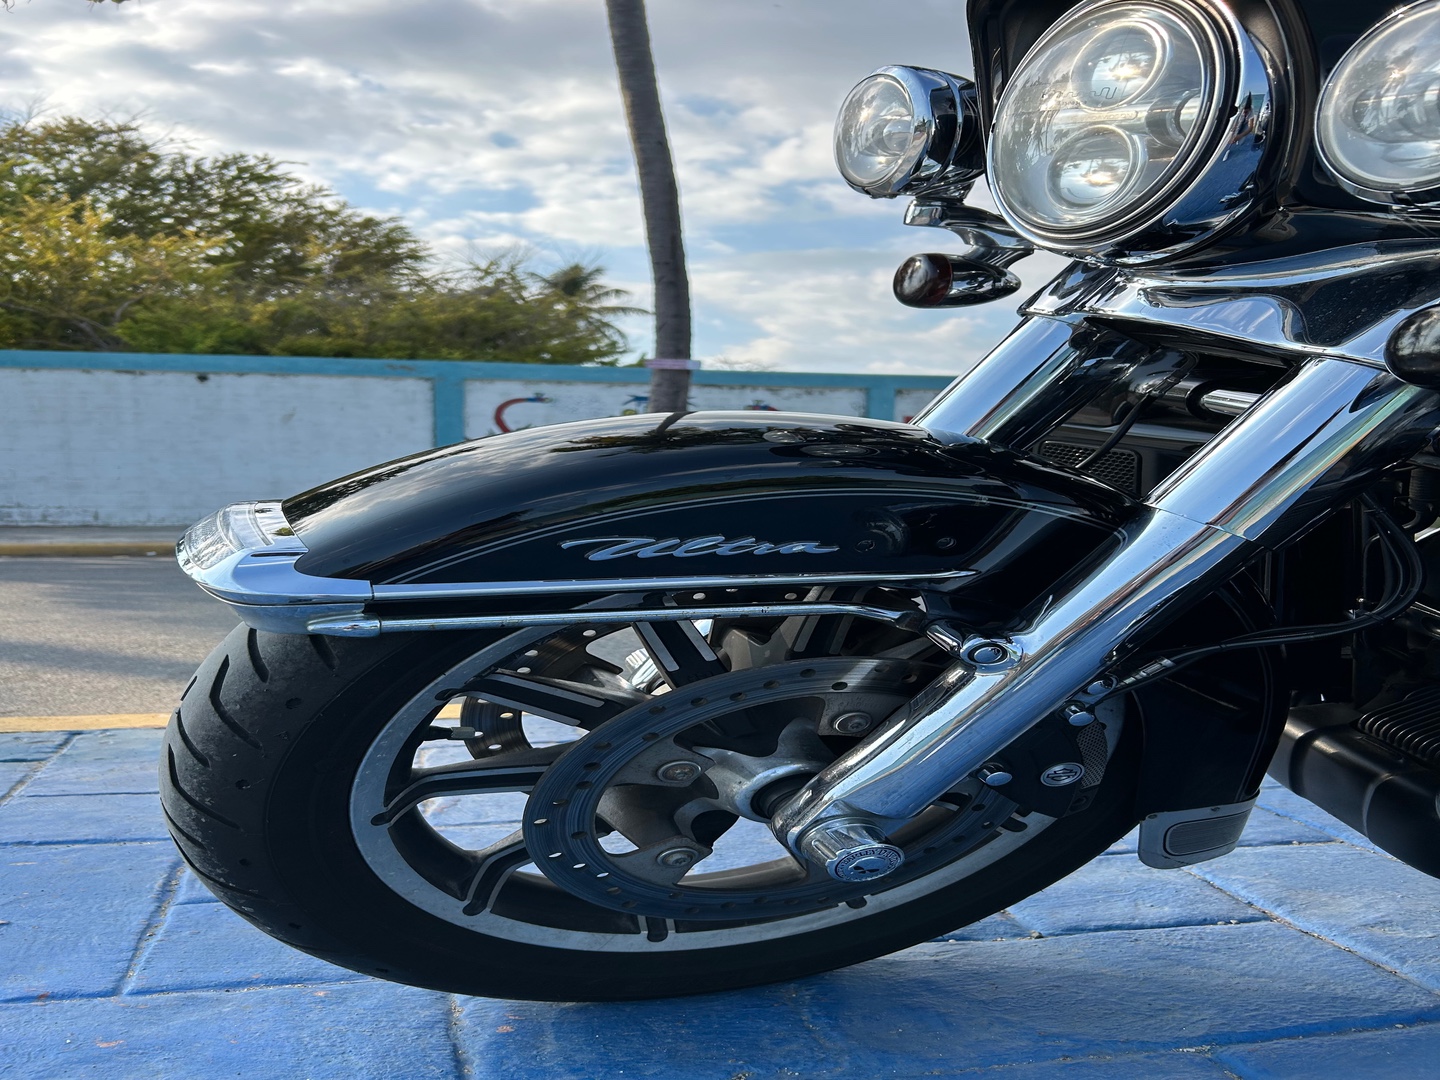 motores y pasolas - Harley Davidson Electra Glide año 2014 4